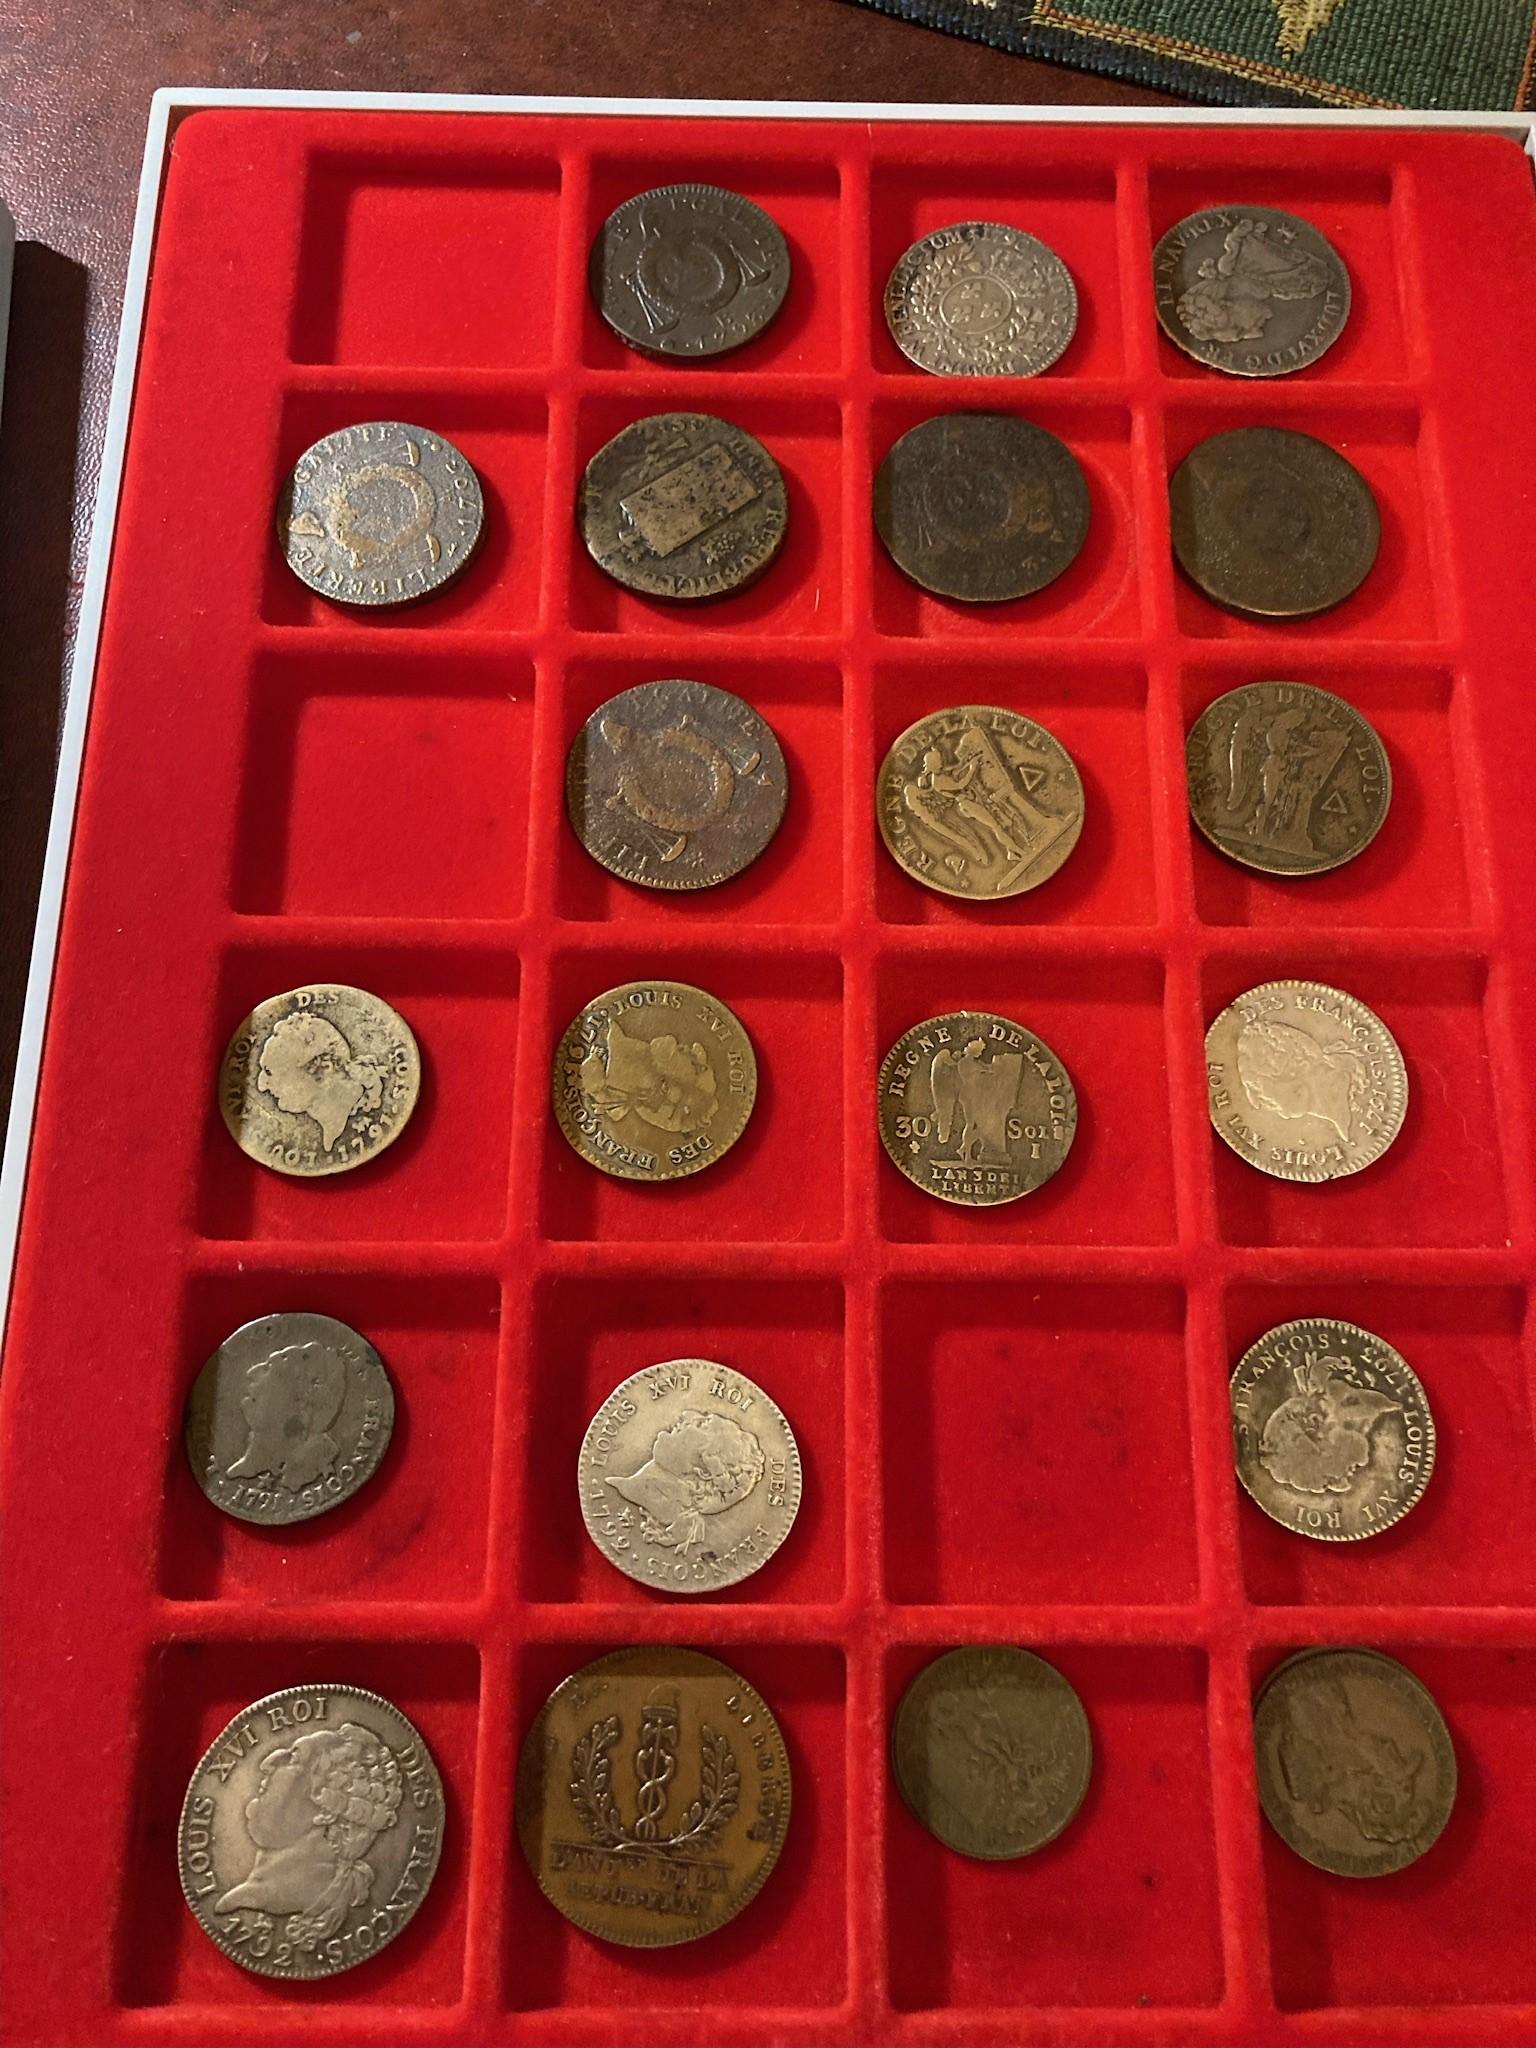 Espositore di monete fai da te - La piazzetta del numismatico -   - Numismatica, monete, collezionismo